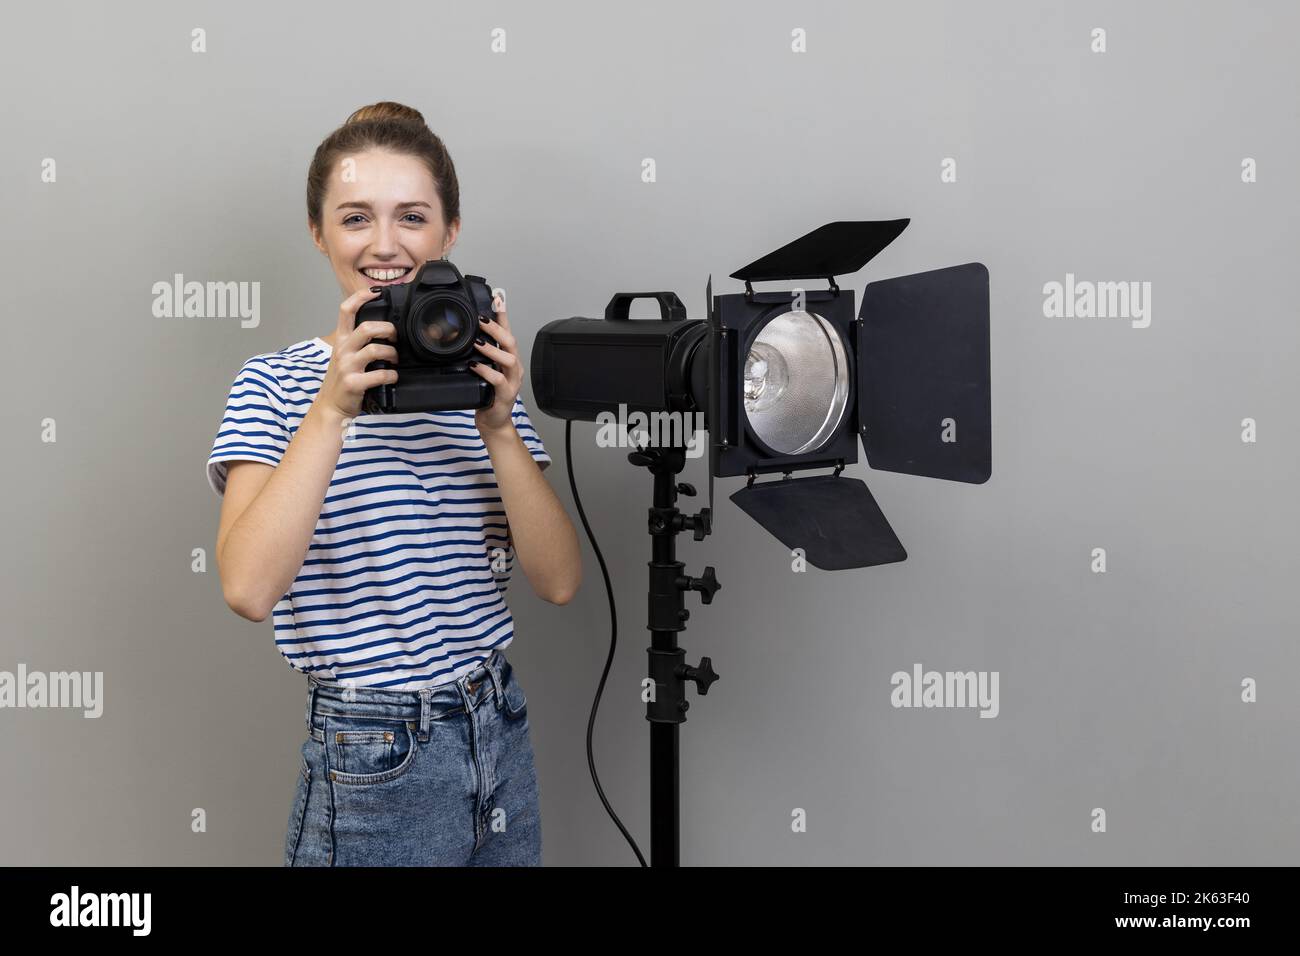 Porträt einer lächelnden, zufriedenen Fotografin mit gestreiftem T-Shirt, die mit einer Fotokamera und einem Reflektor steht und die Kamera anschaut. Innenaufnahme des Studios isoliert auf grauem Hintergrund. Stockfoto